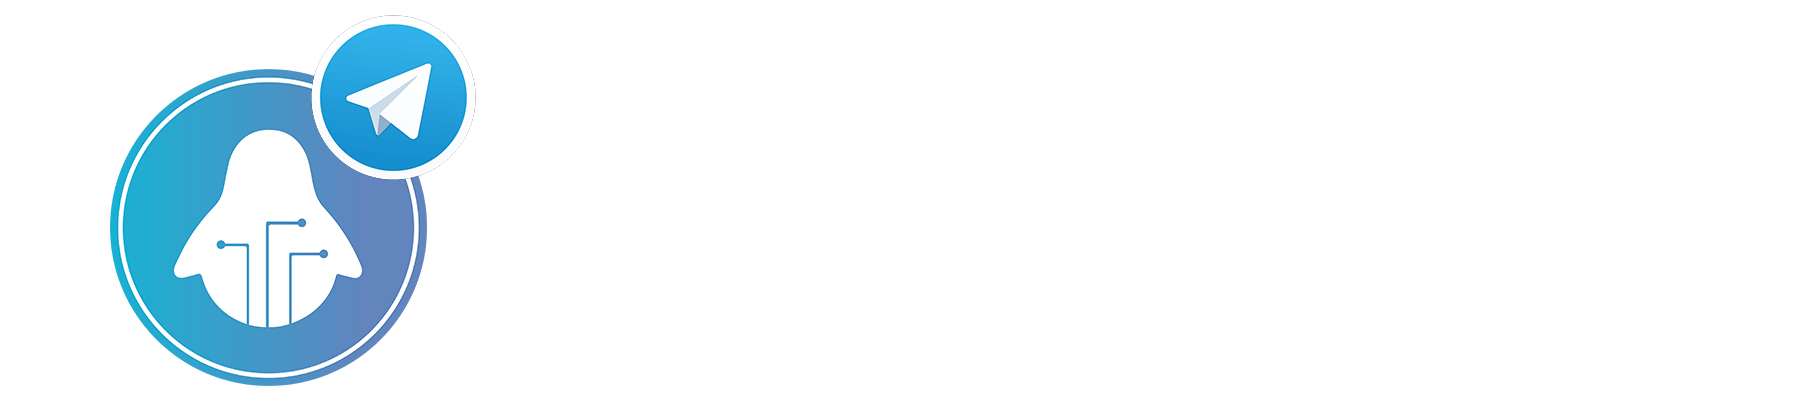 Amibot-tg